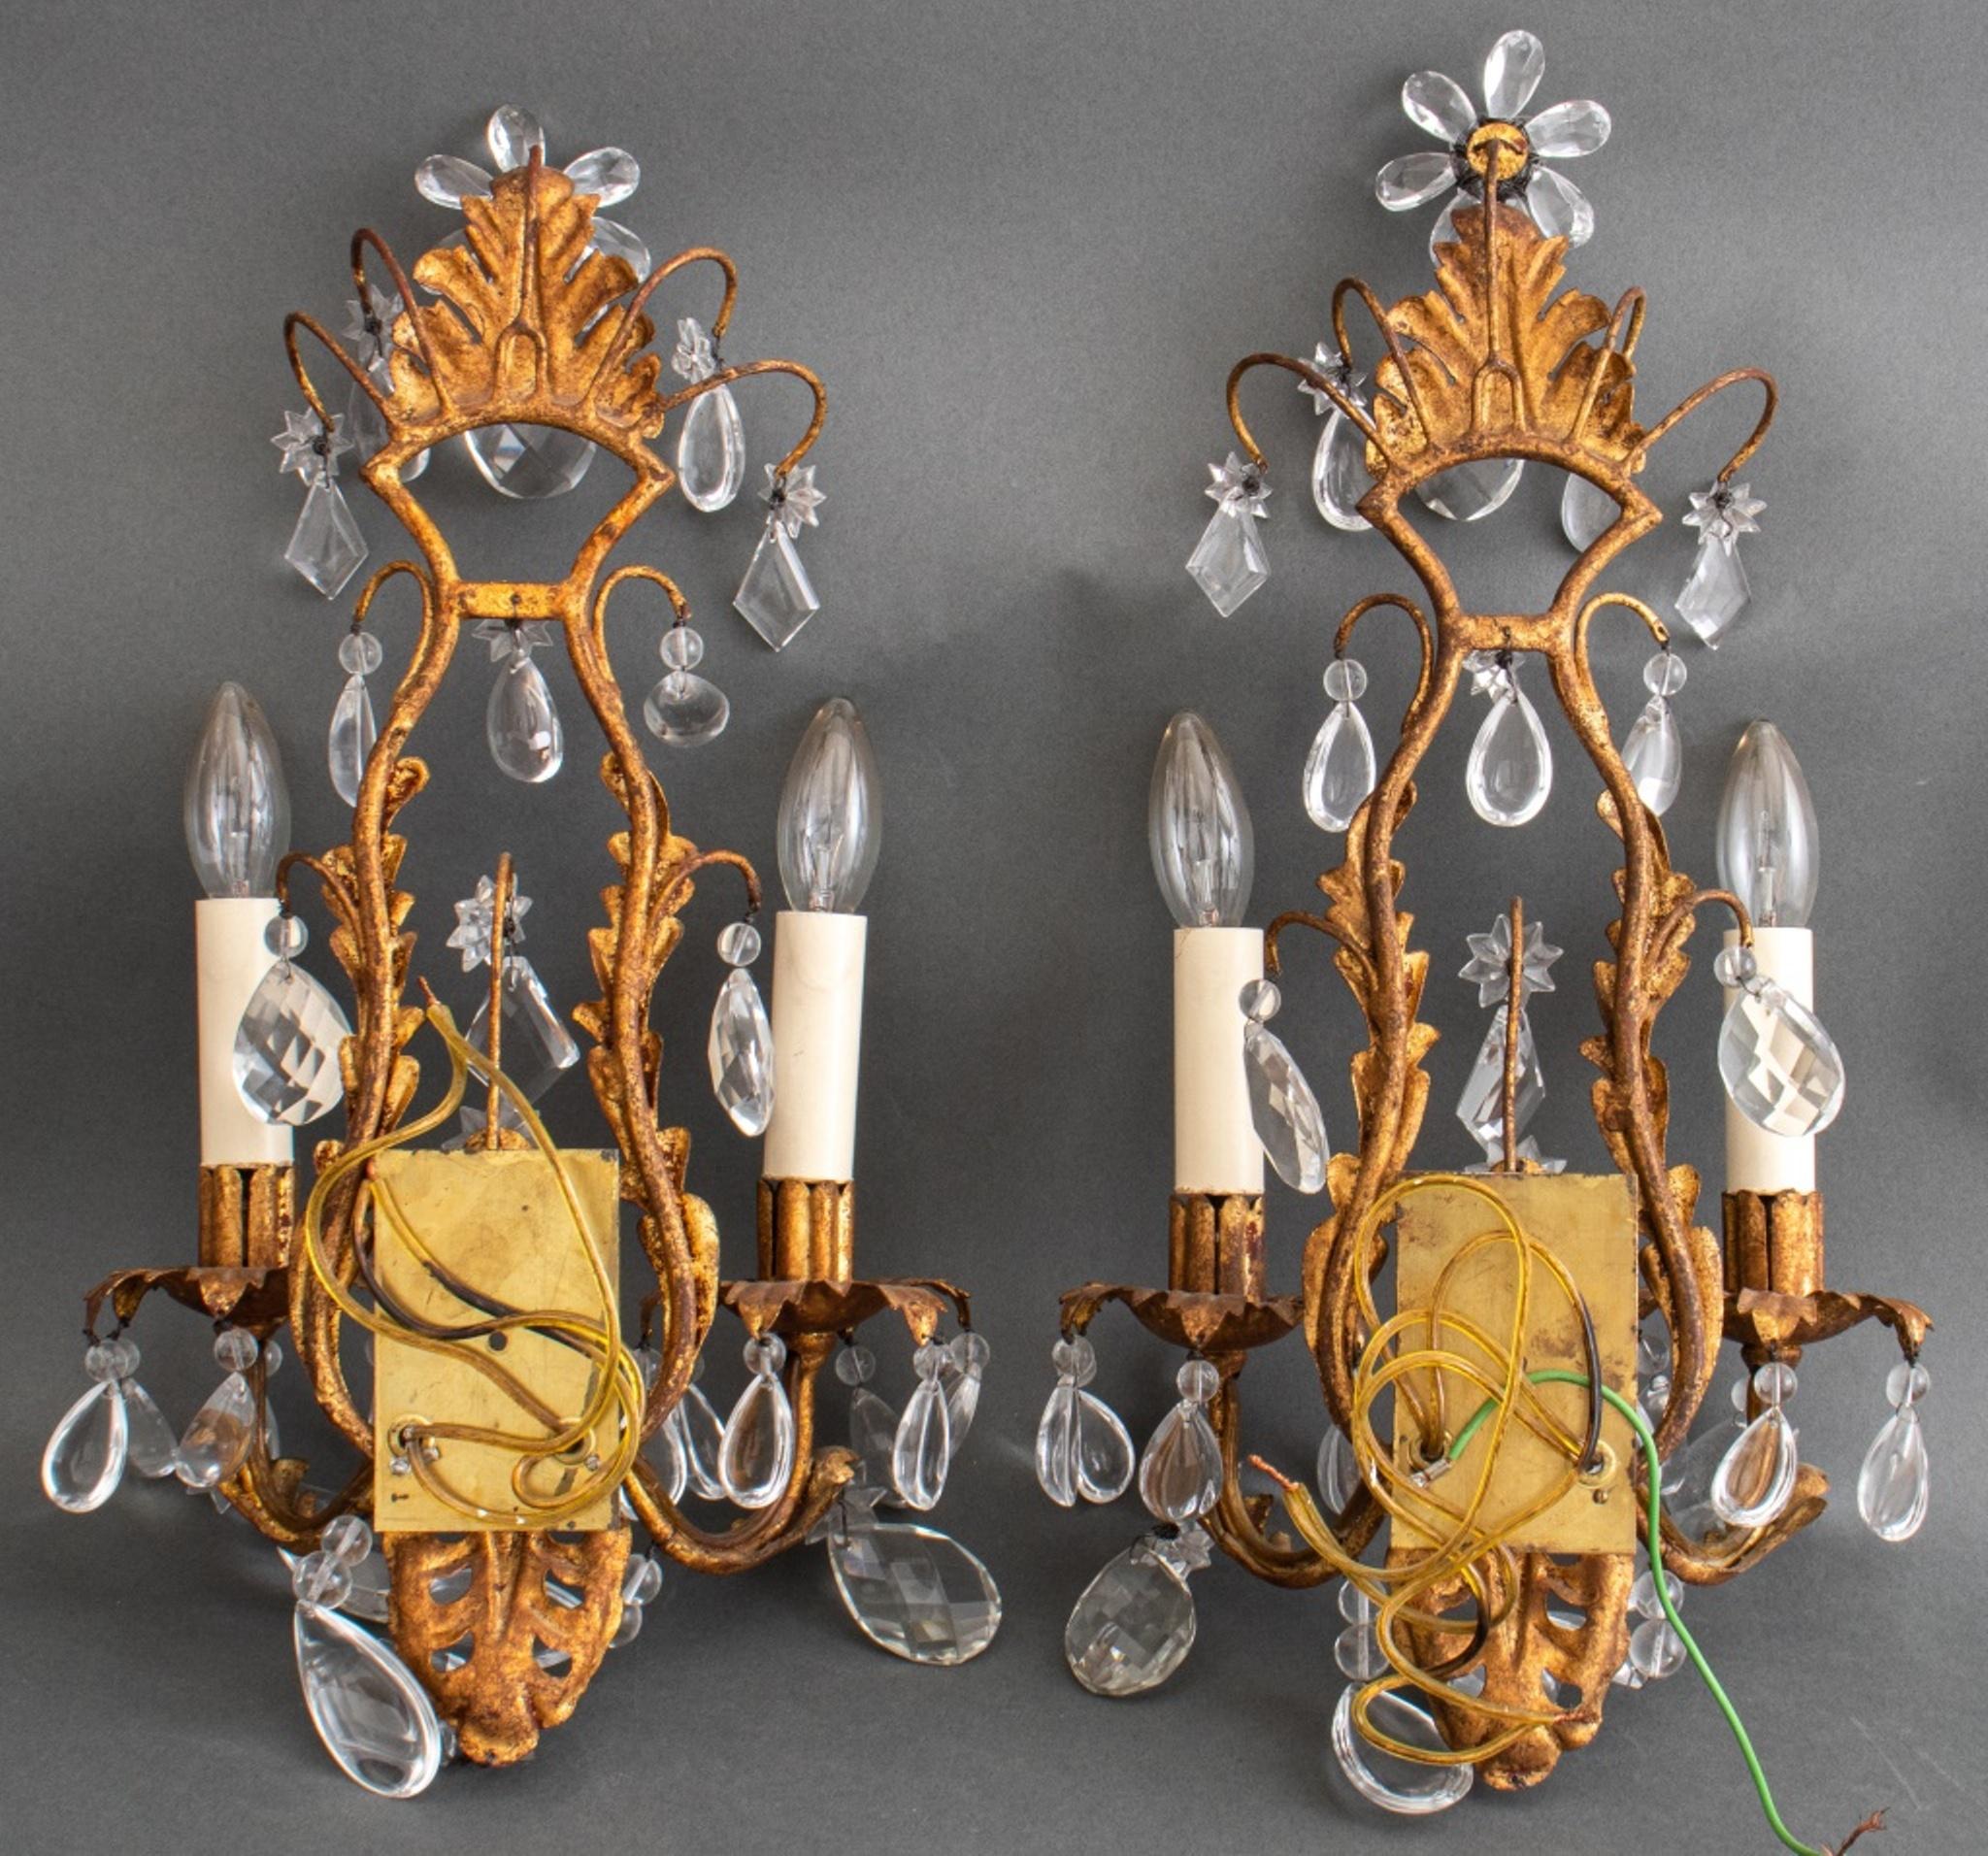 Appliques à deux lumières de style néo-rococo italien Hollywood Regency, années 1960-1970, chacune avec des montures en métal doré à volutes réticulées sur un cadre cage en métal doré à trois bras, le tout suspendu avec des cristaux et câblé avec